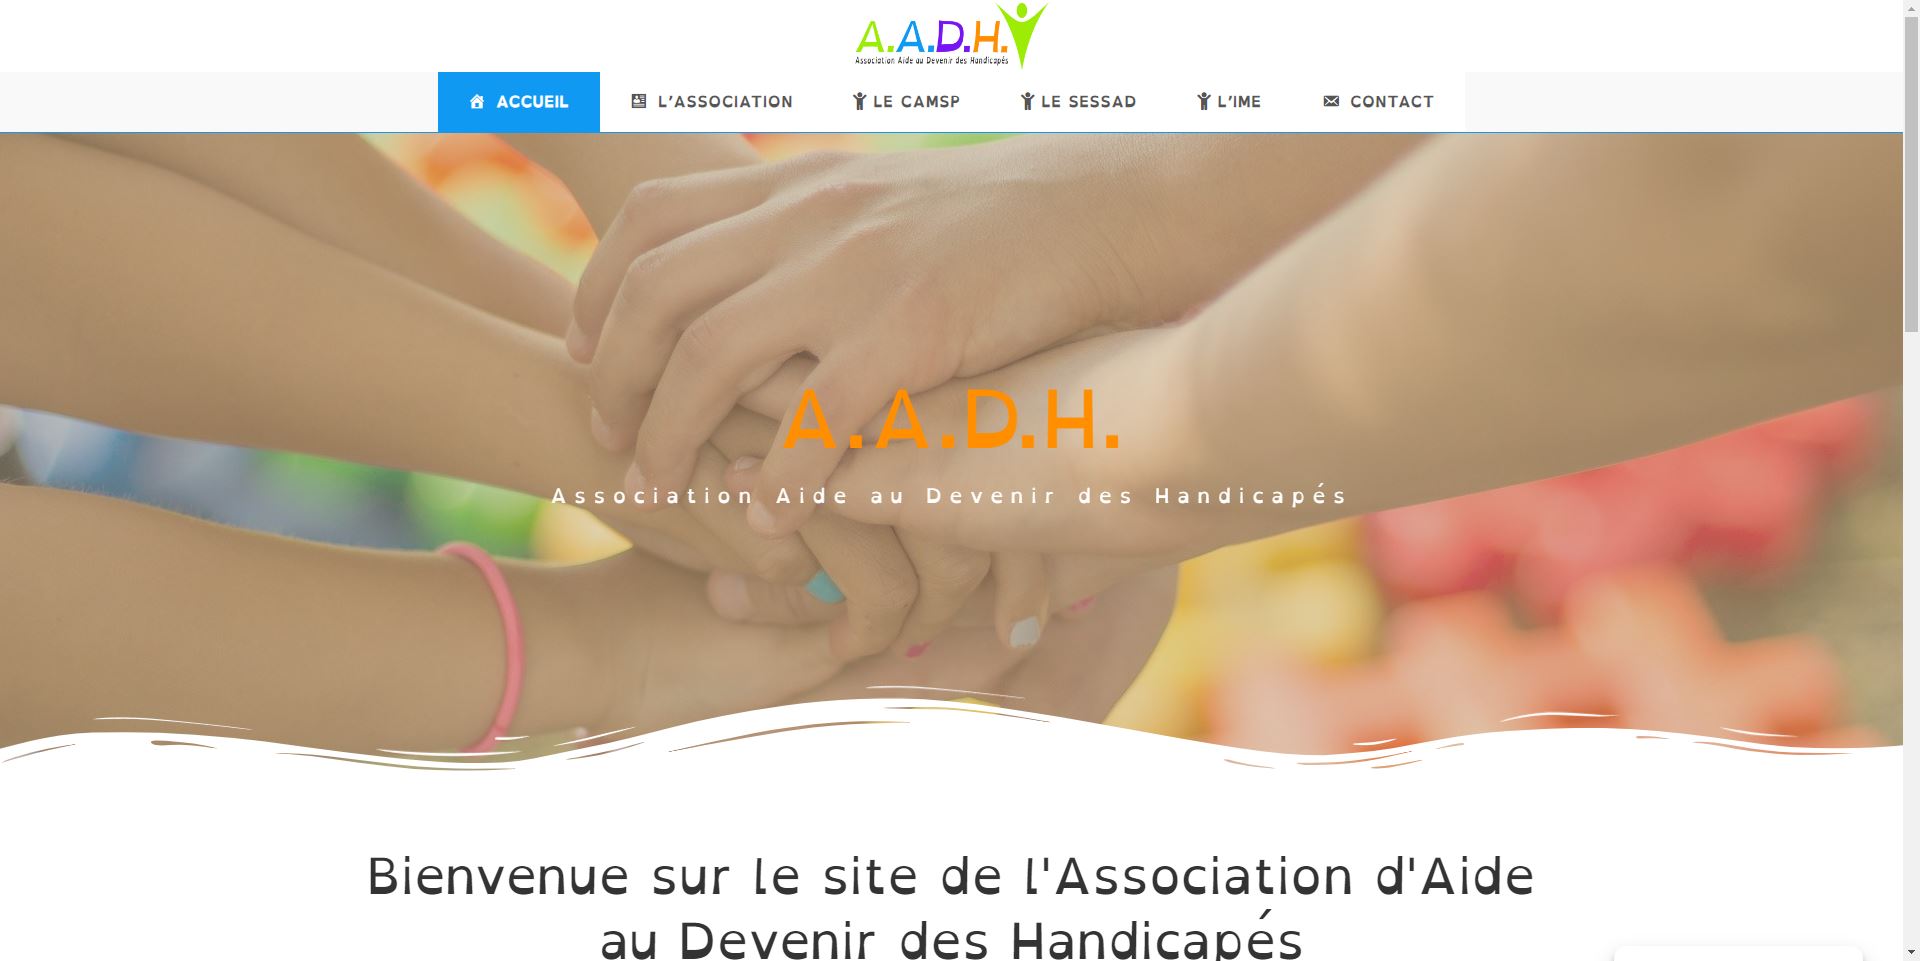 Lire la suite à propos de l’article AADH Association Aide au Devenir des Handicapés